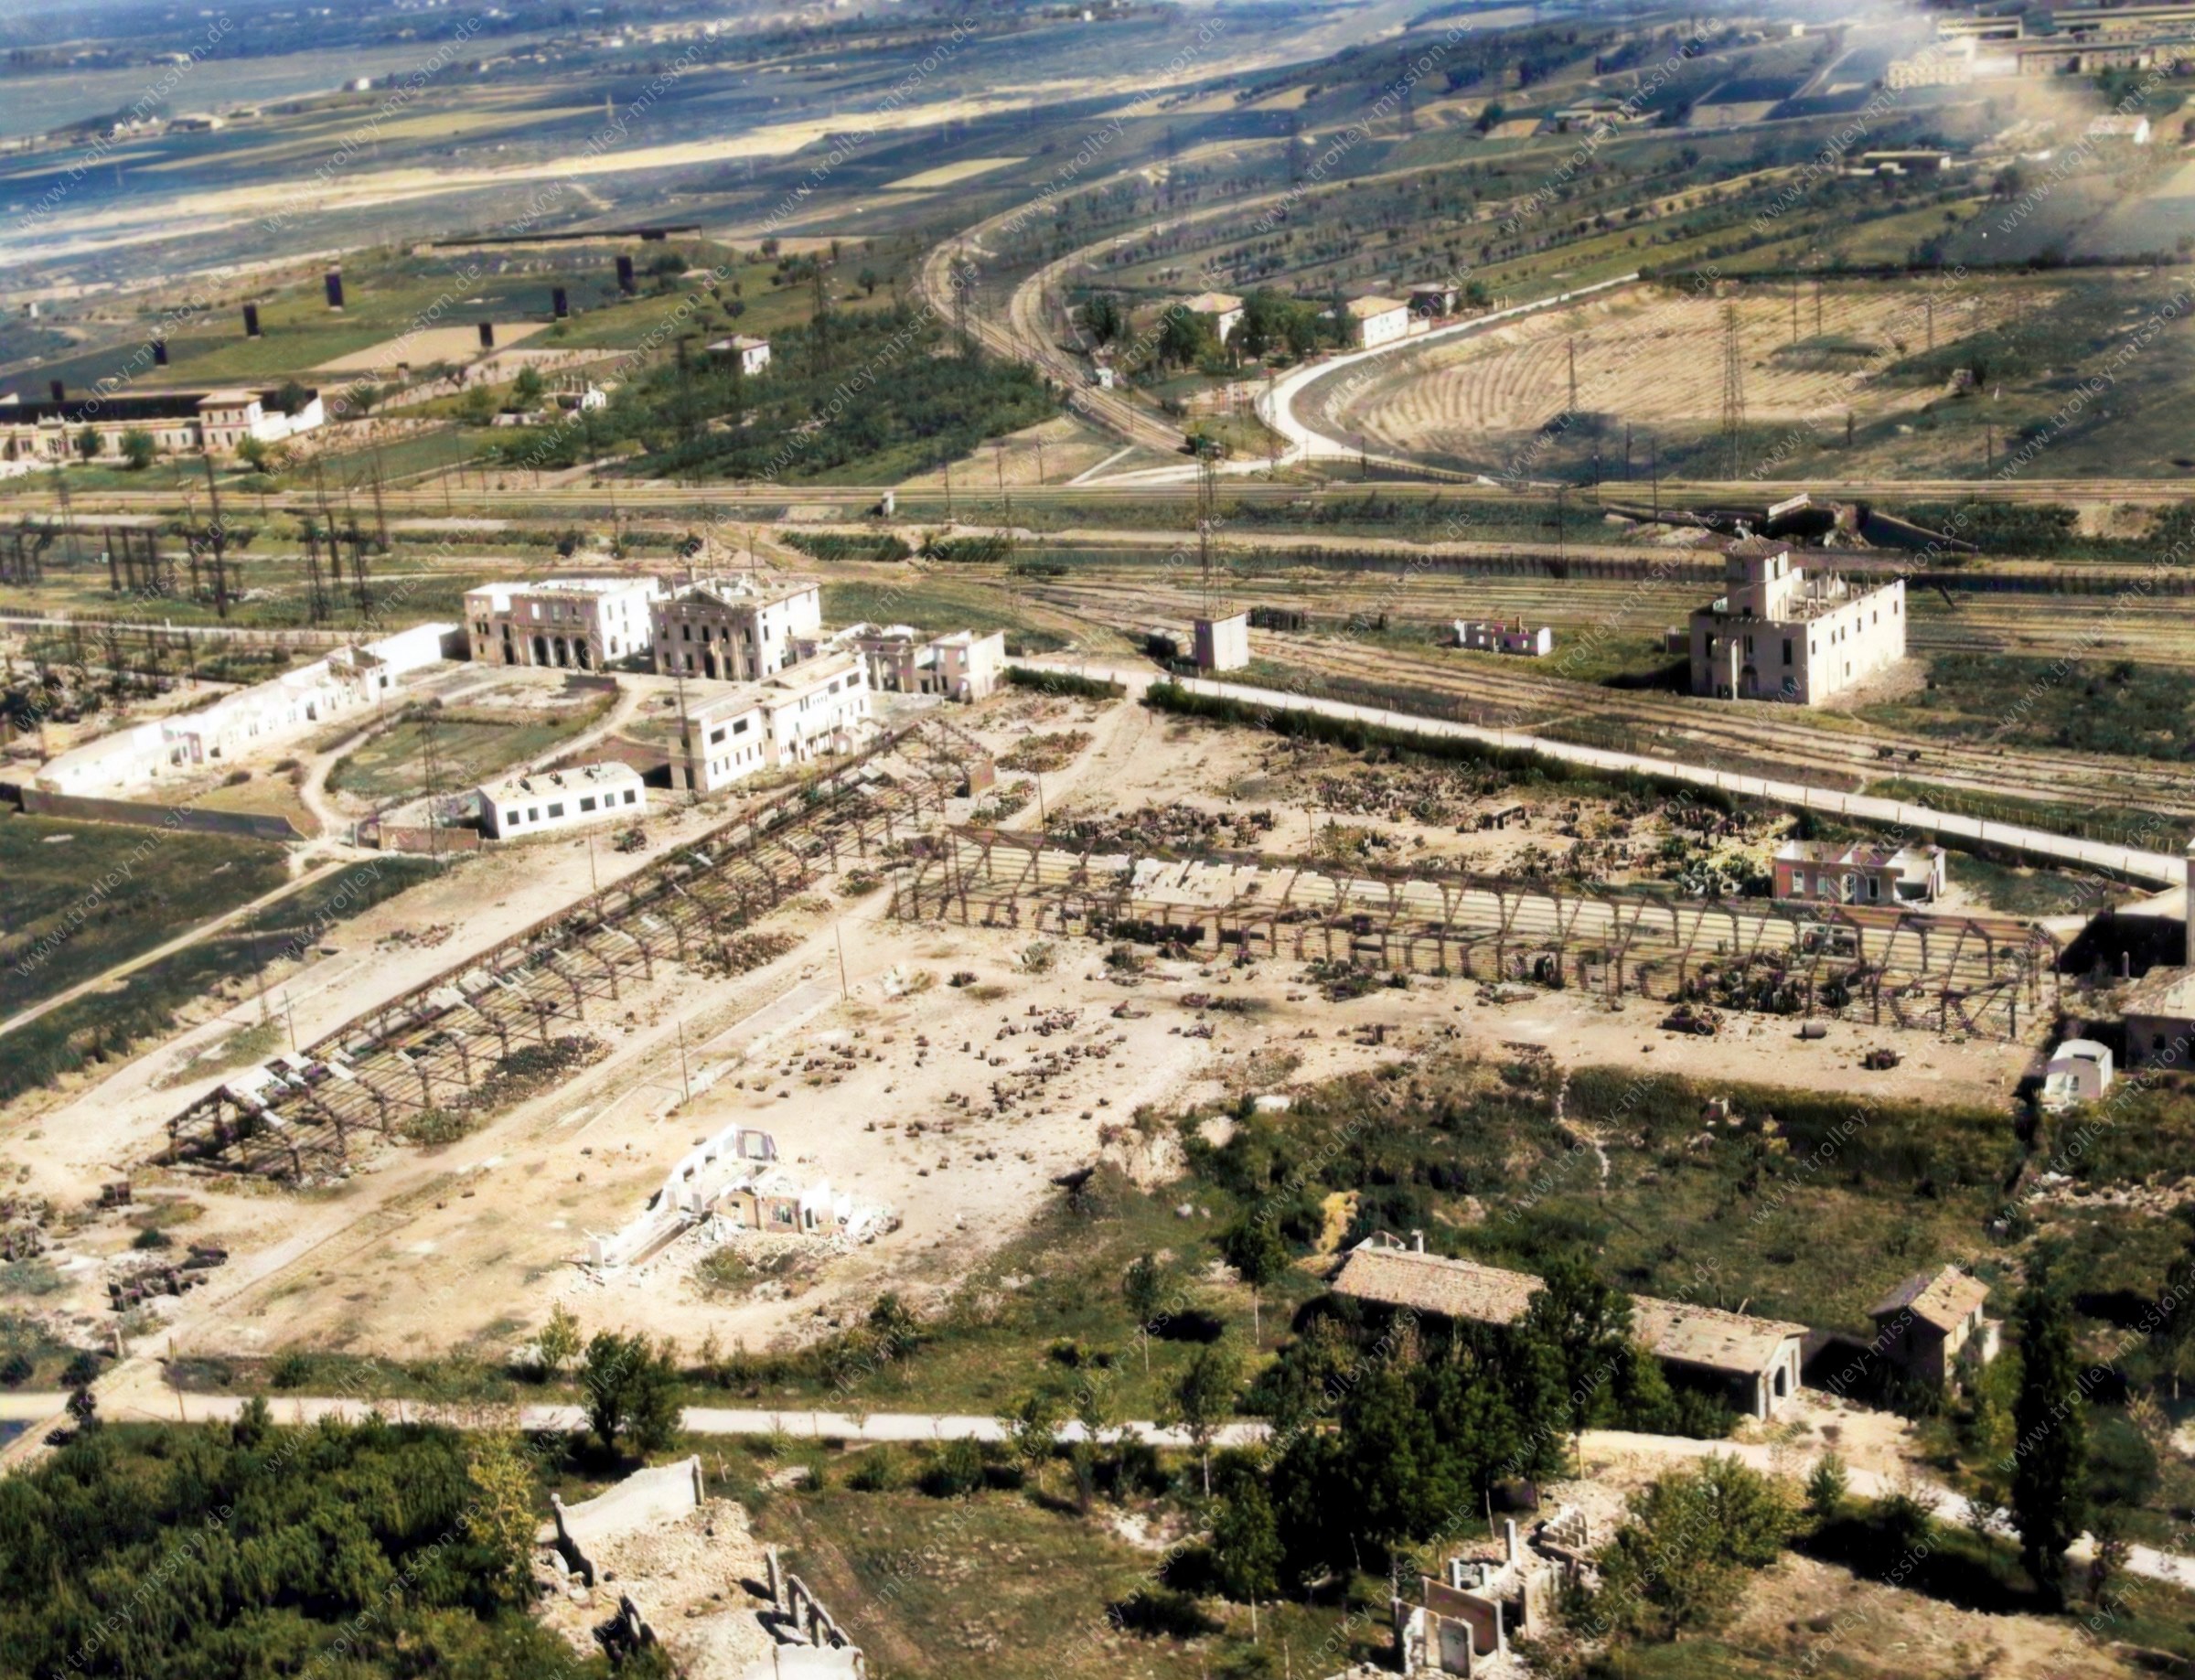 Das Luftbild zeigt die westliche Einfahrt bzw. Ausfahrt des Hauptbahnhofes von Bologna („Bologna Centrale“) in Italien.